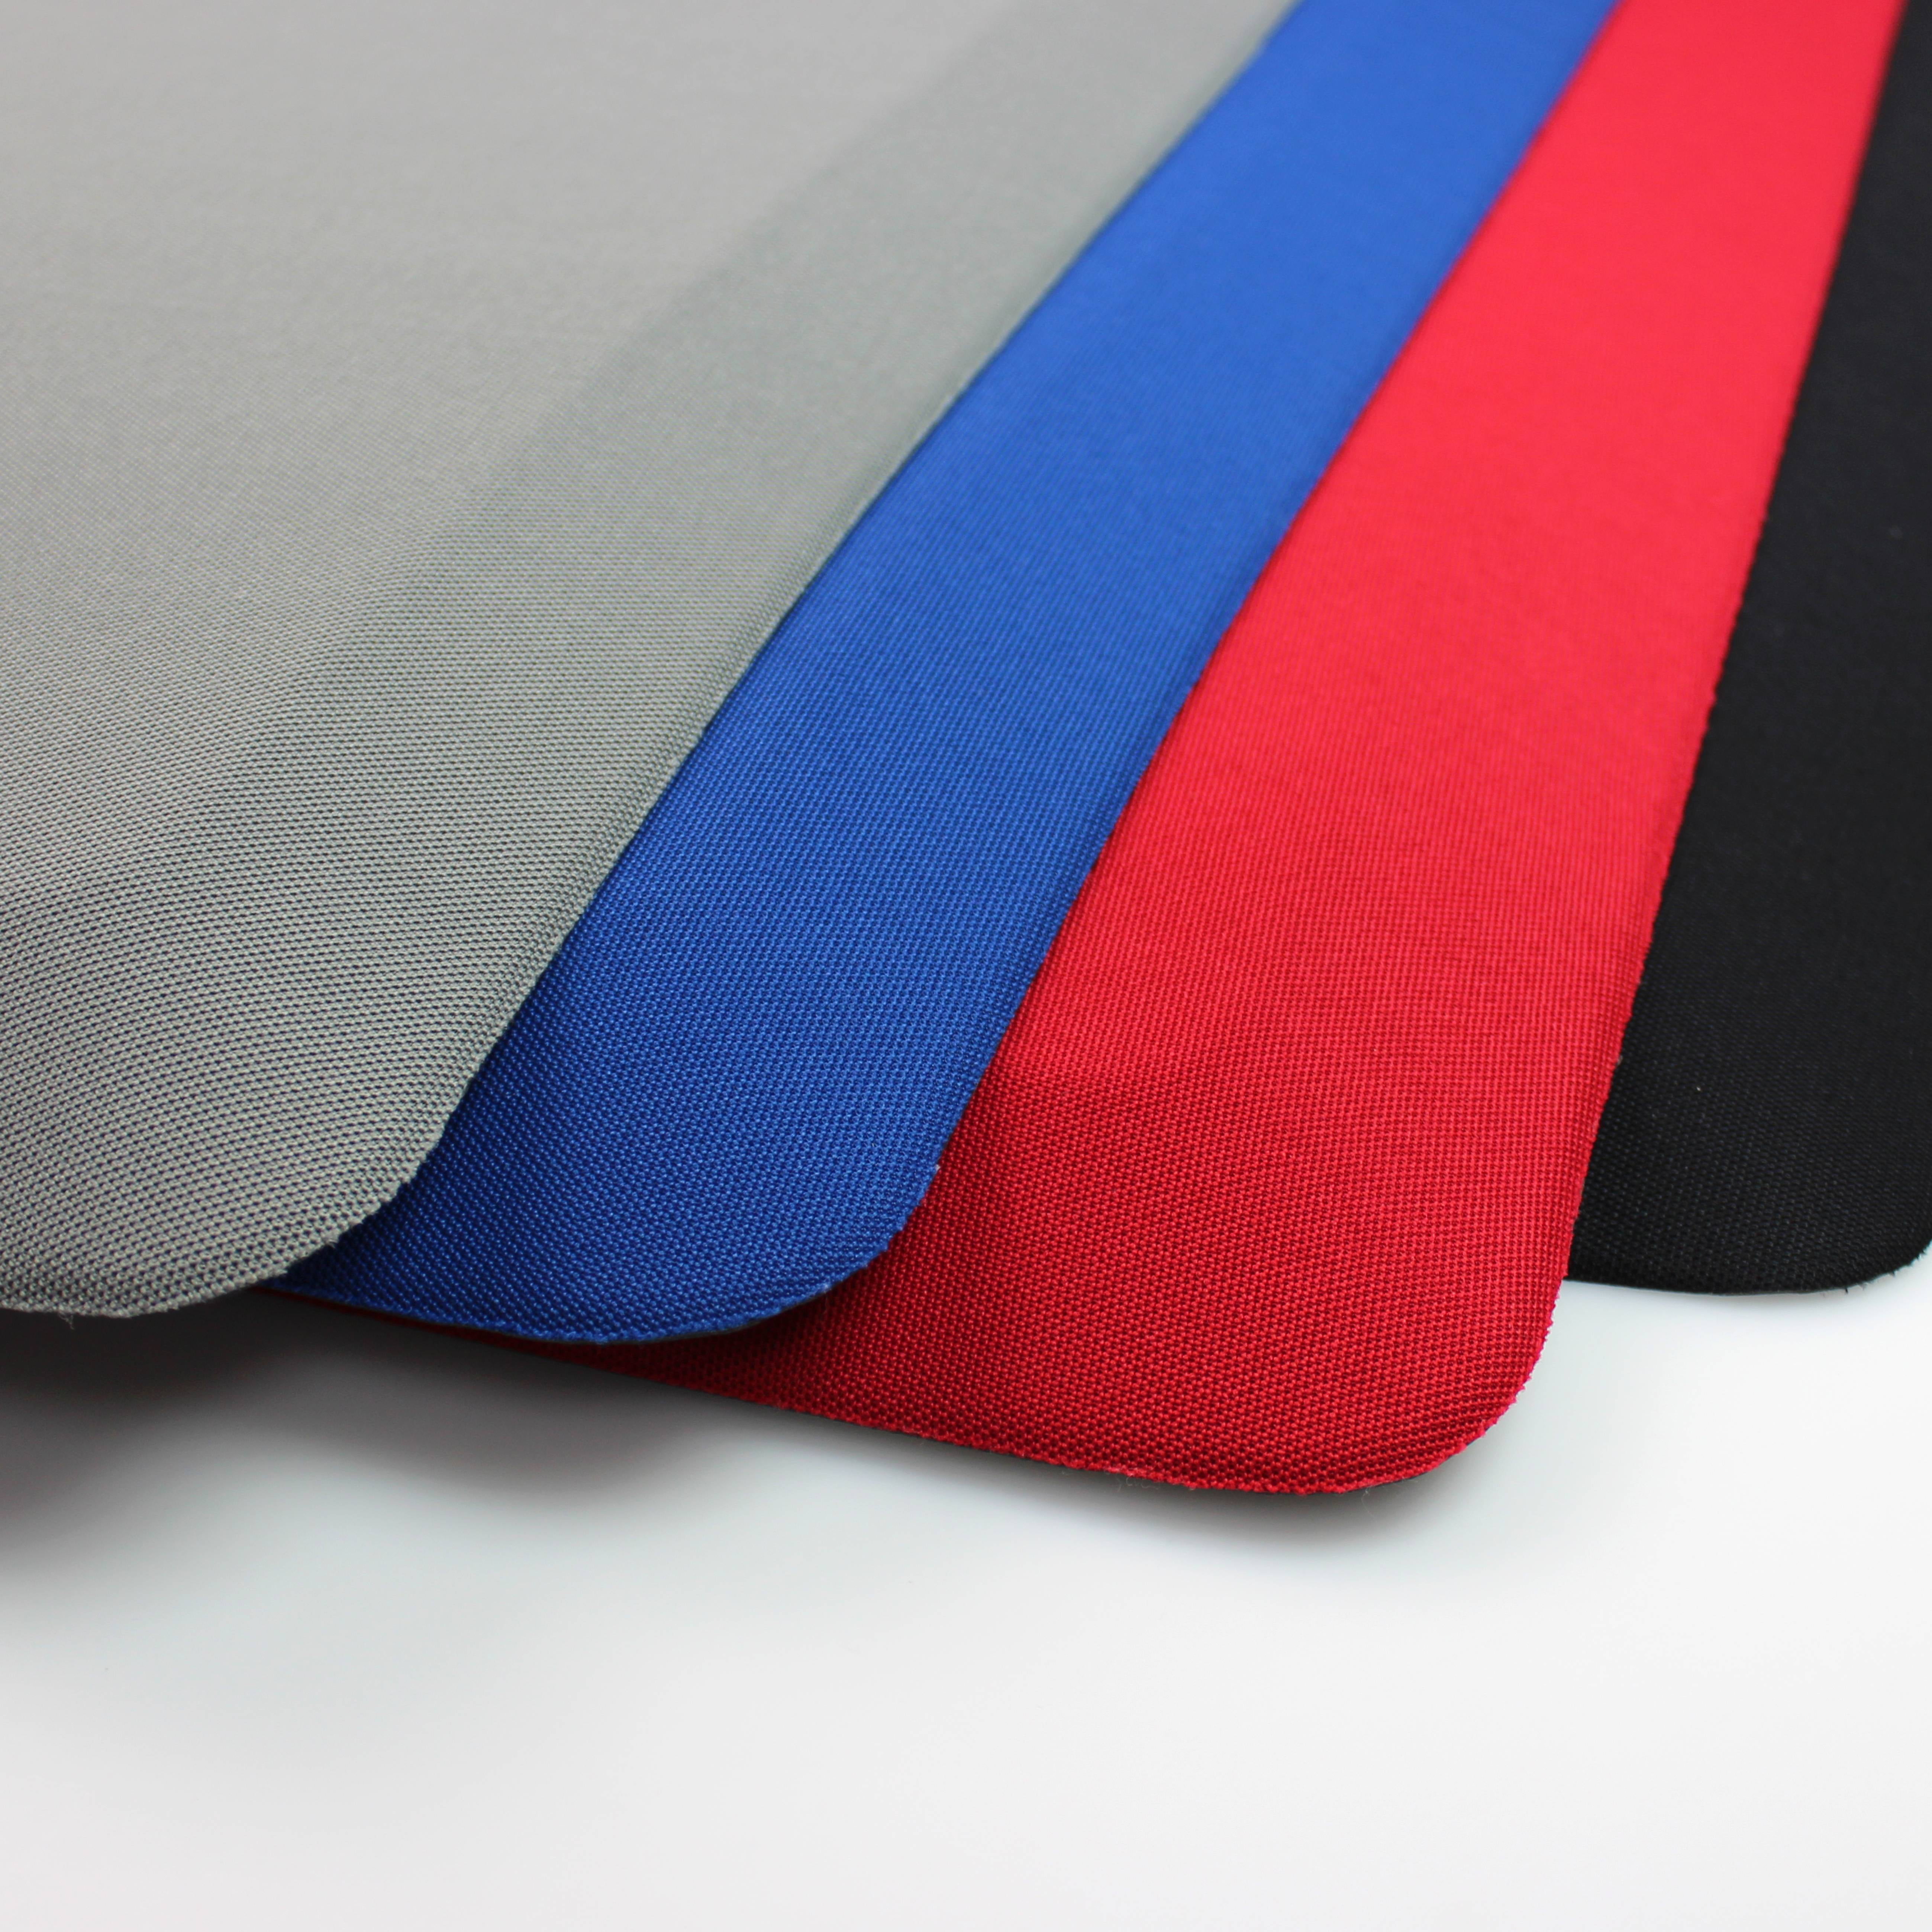 Ultralux Premium Anti-Fatigue Floor Comfort Mat | Durable Ergonomic Multi-Purpose Non-Slip Standing Support Mat | 3/4 Thick | Blue